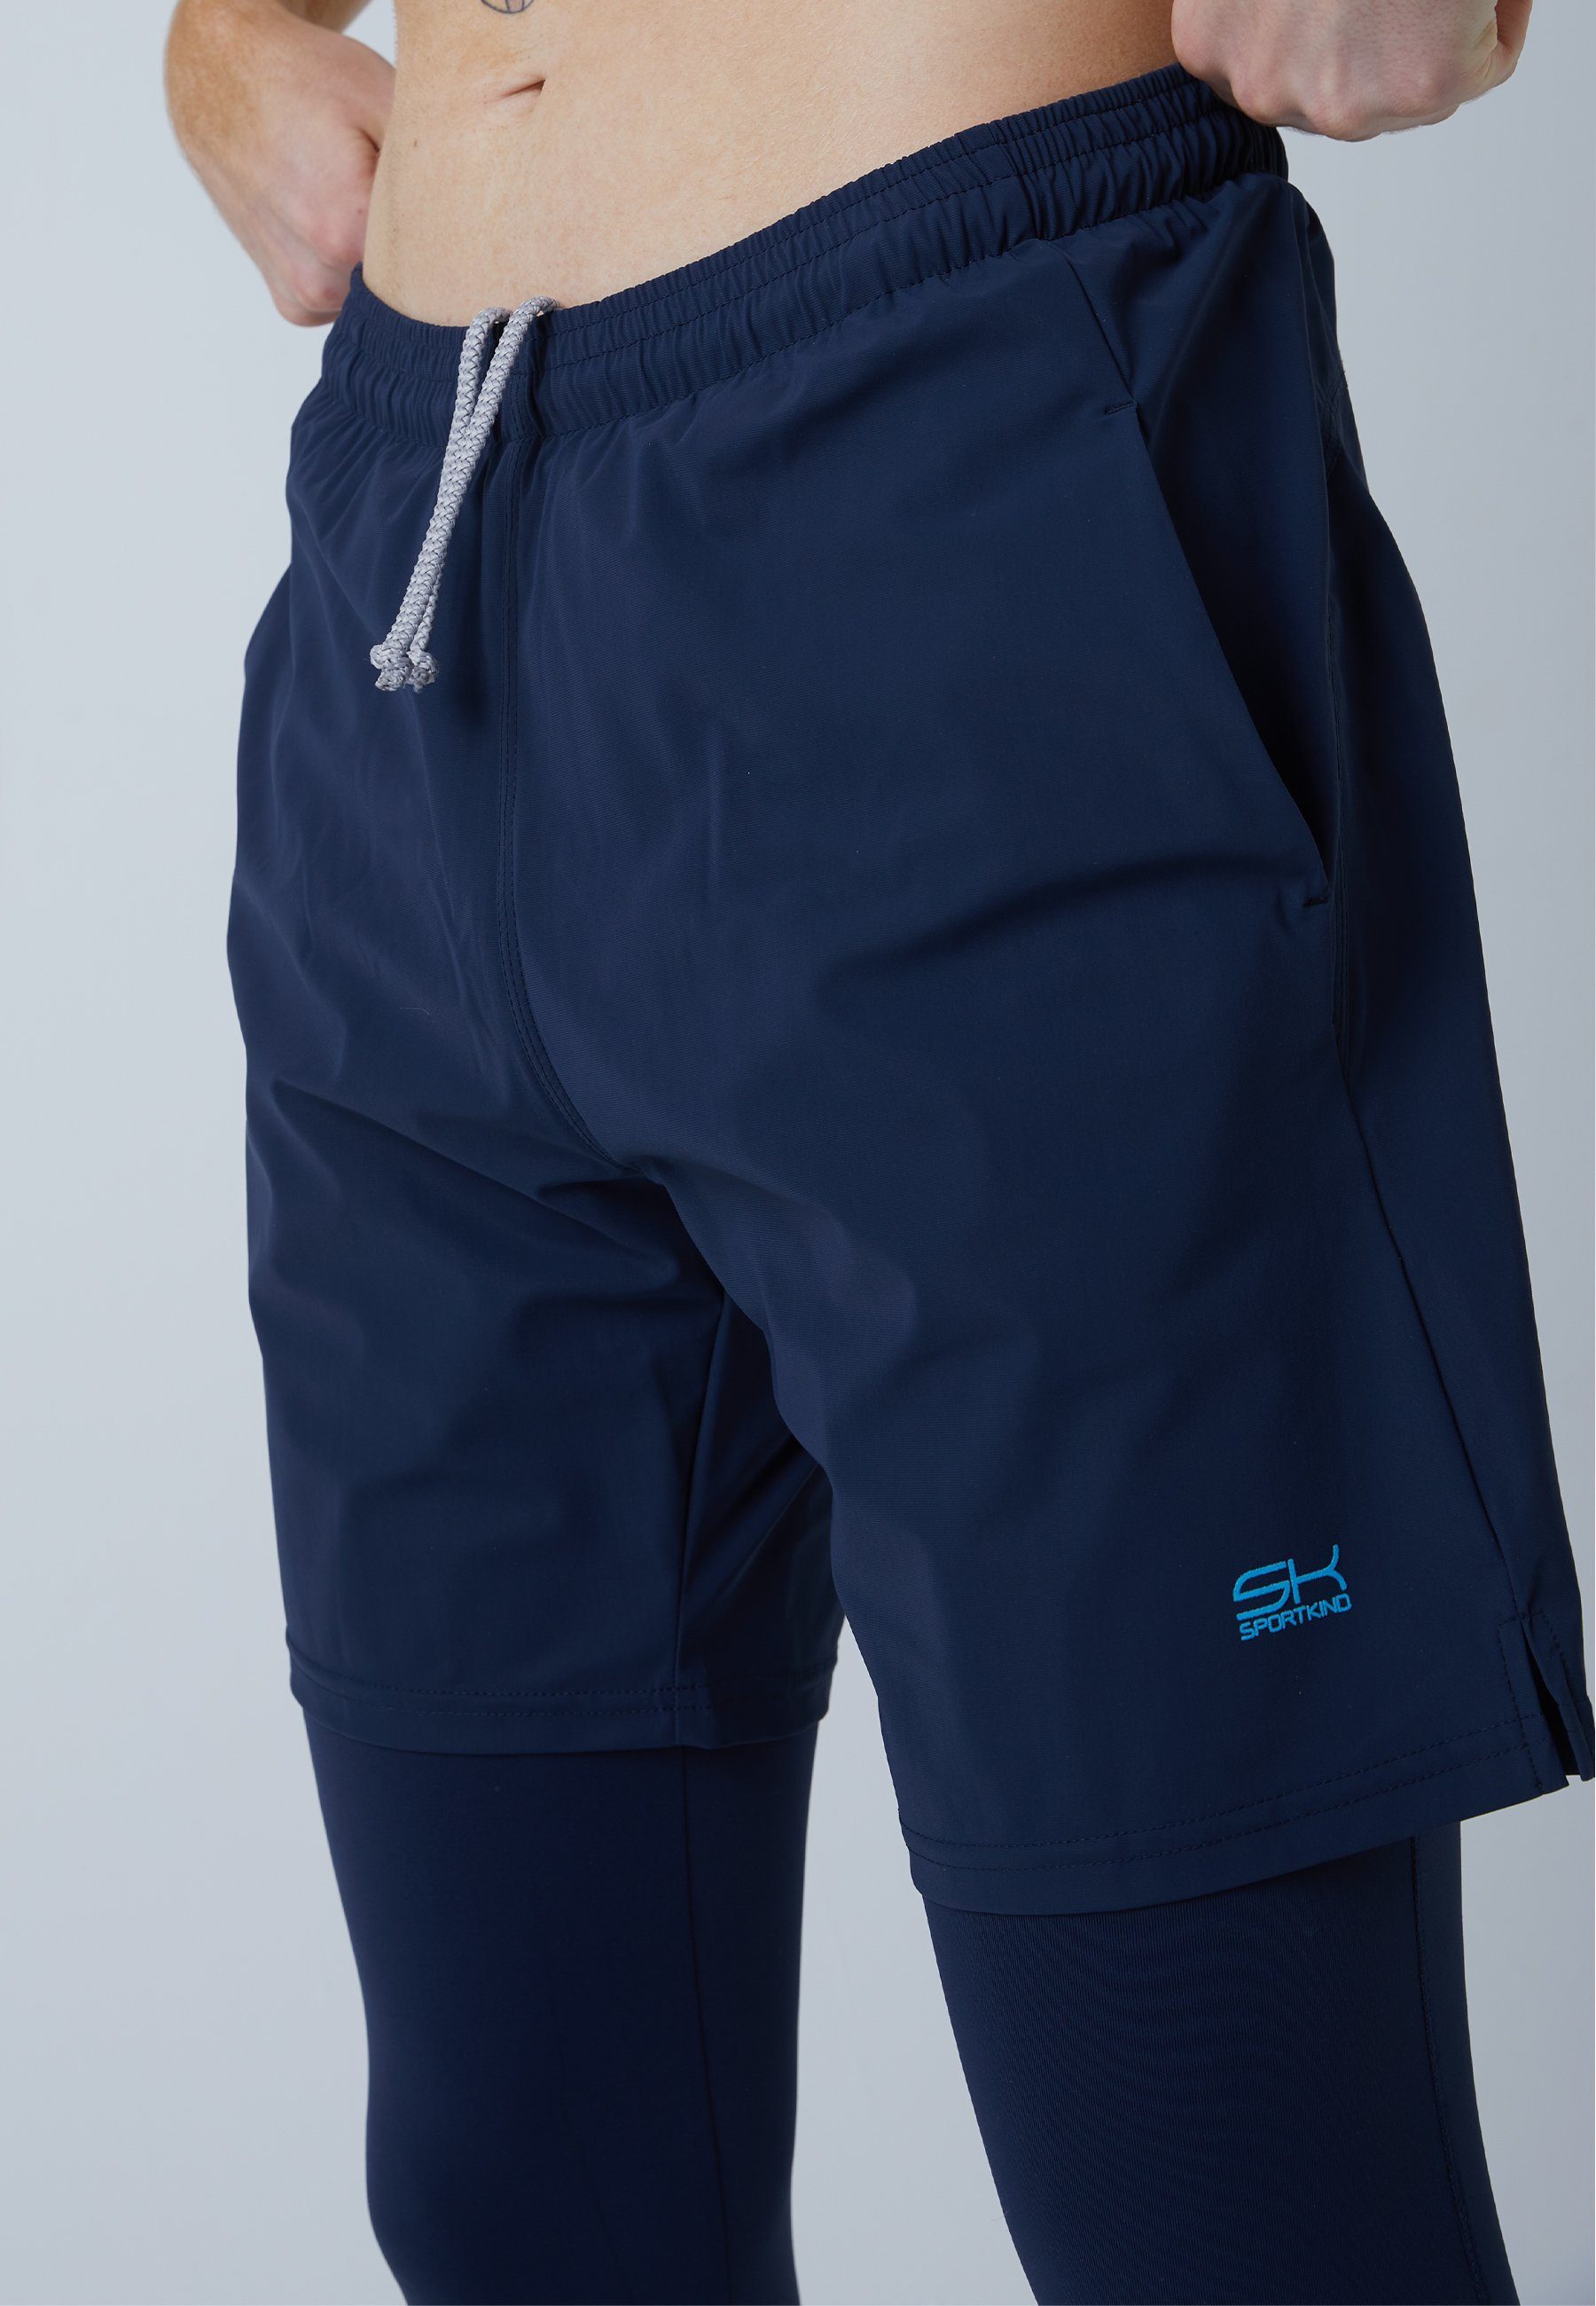 SPORTKIND & Herren 2-in-1 Leggings Jungen navy Sporthose mit Shorts blau